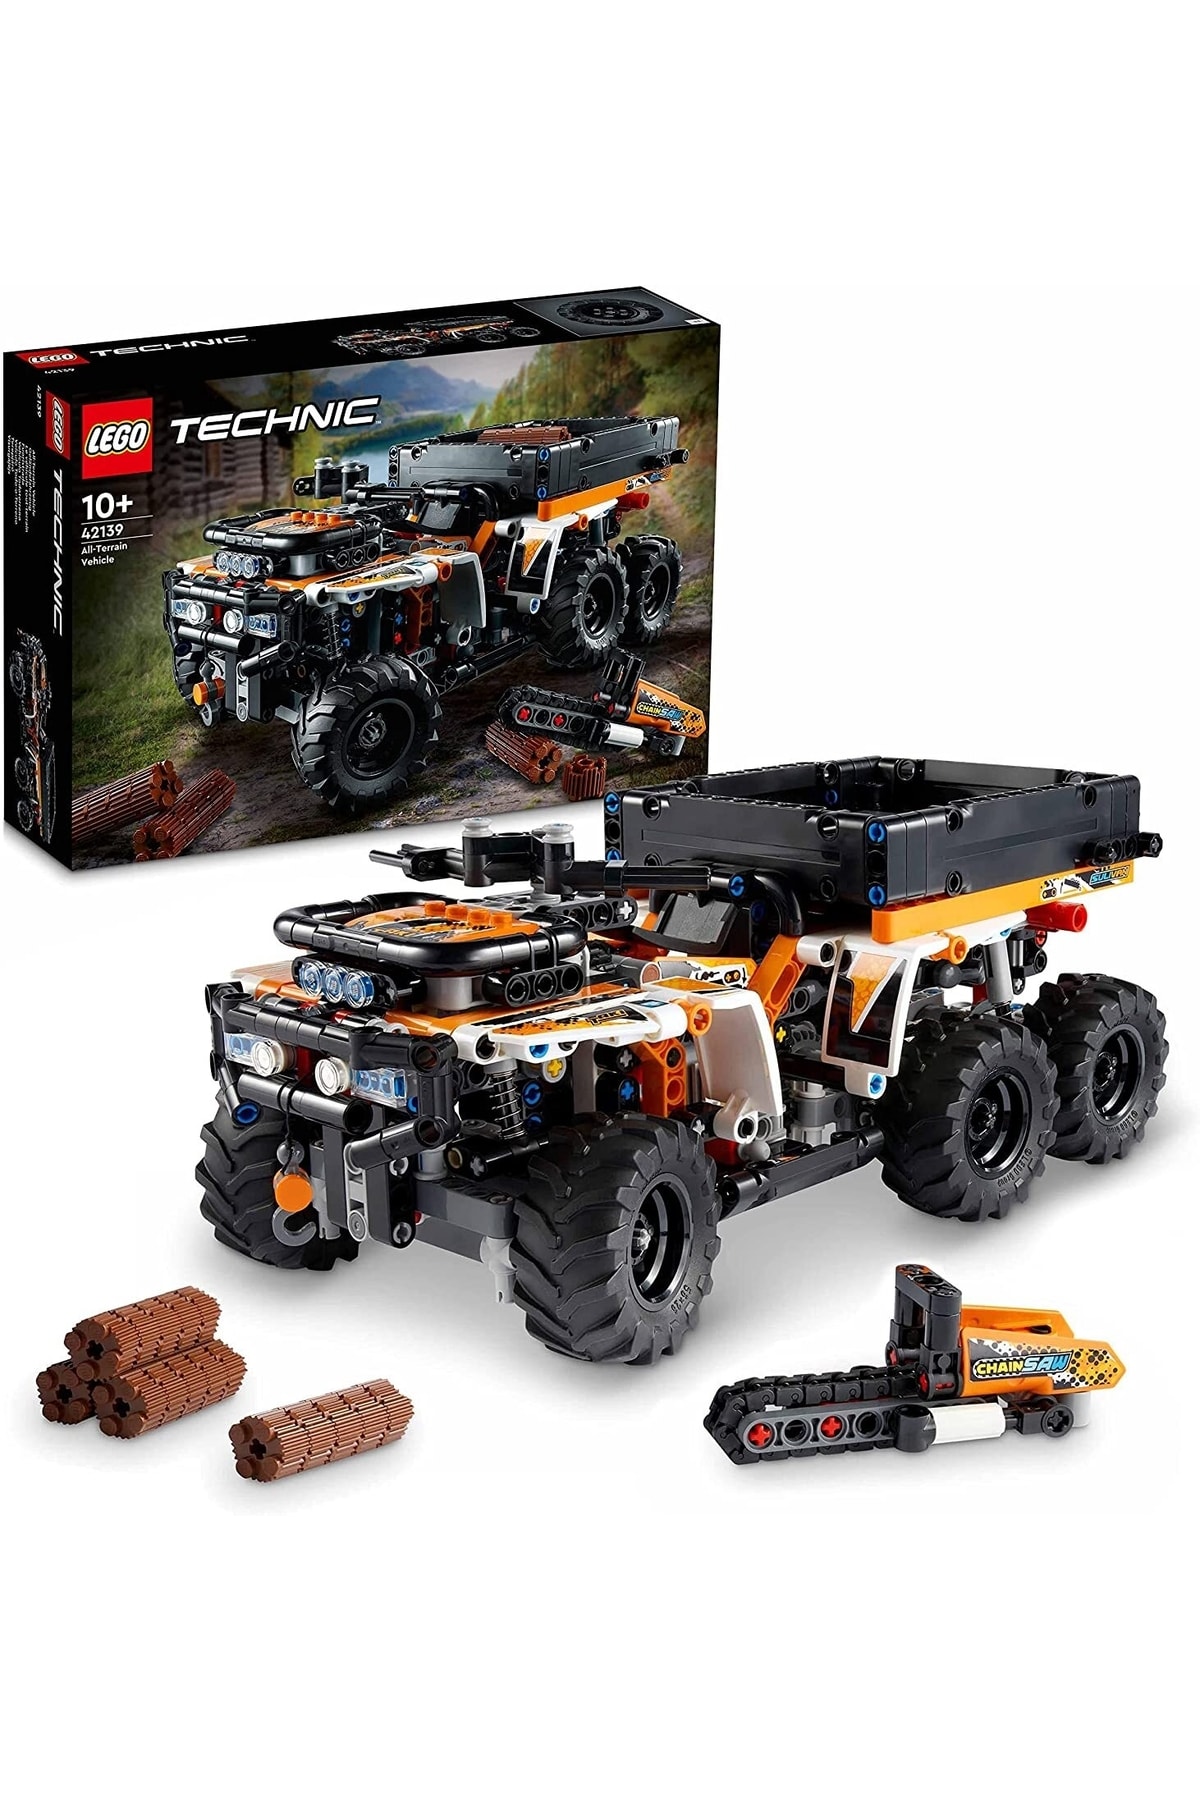 GROS Lego® Technic Arazi Aracı 42139 – 10 Yaş Ve Üzeri Araçları Seven Çocuklar Için Yaratıcı Oyuncak